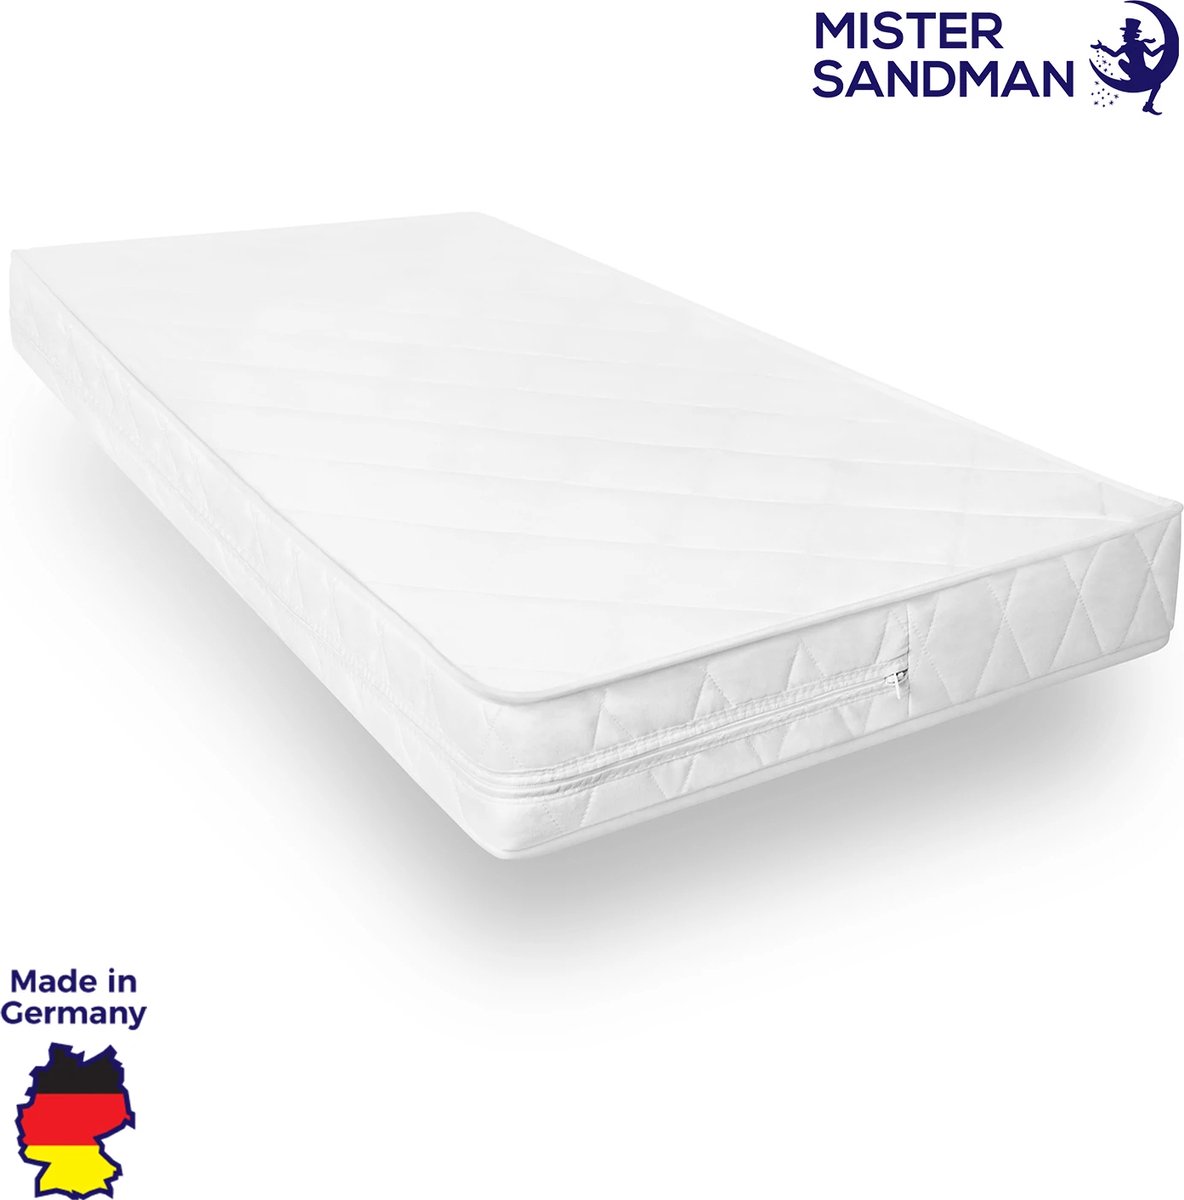 Mister Sandman - Protège-matelas imperméable pour une hygiène optimale du  lit 